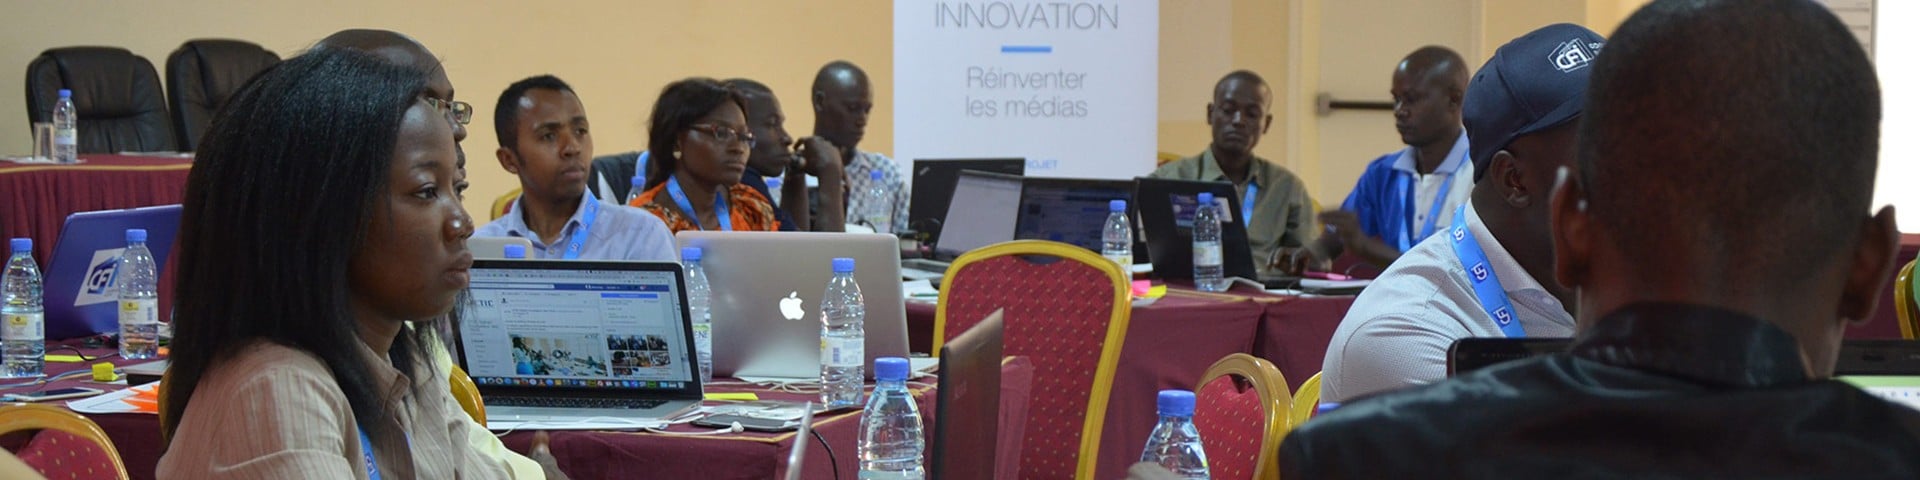 Afrique Innovation Entrepreneurs : proposez vos projets médias numériques